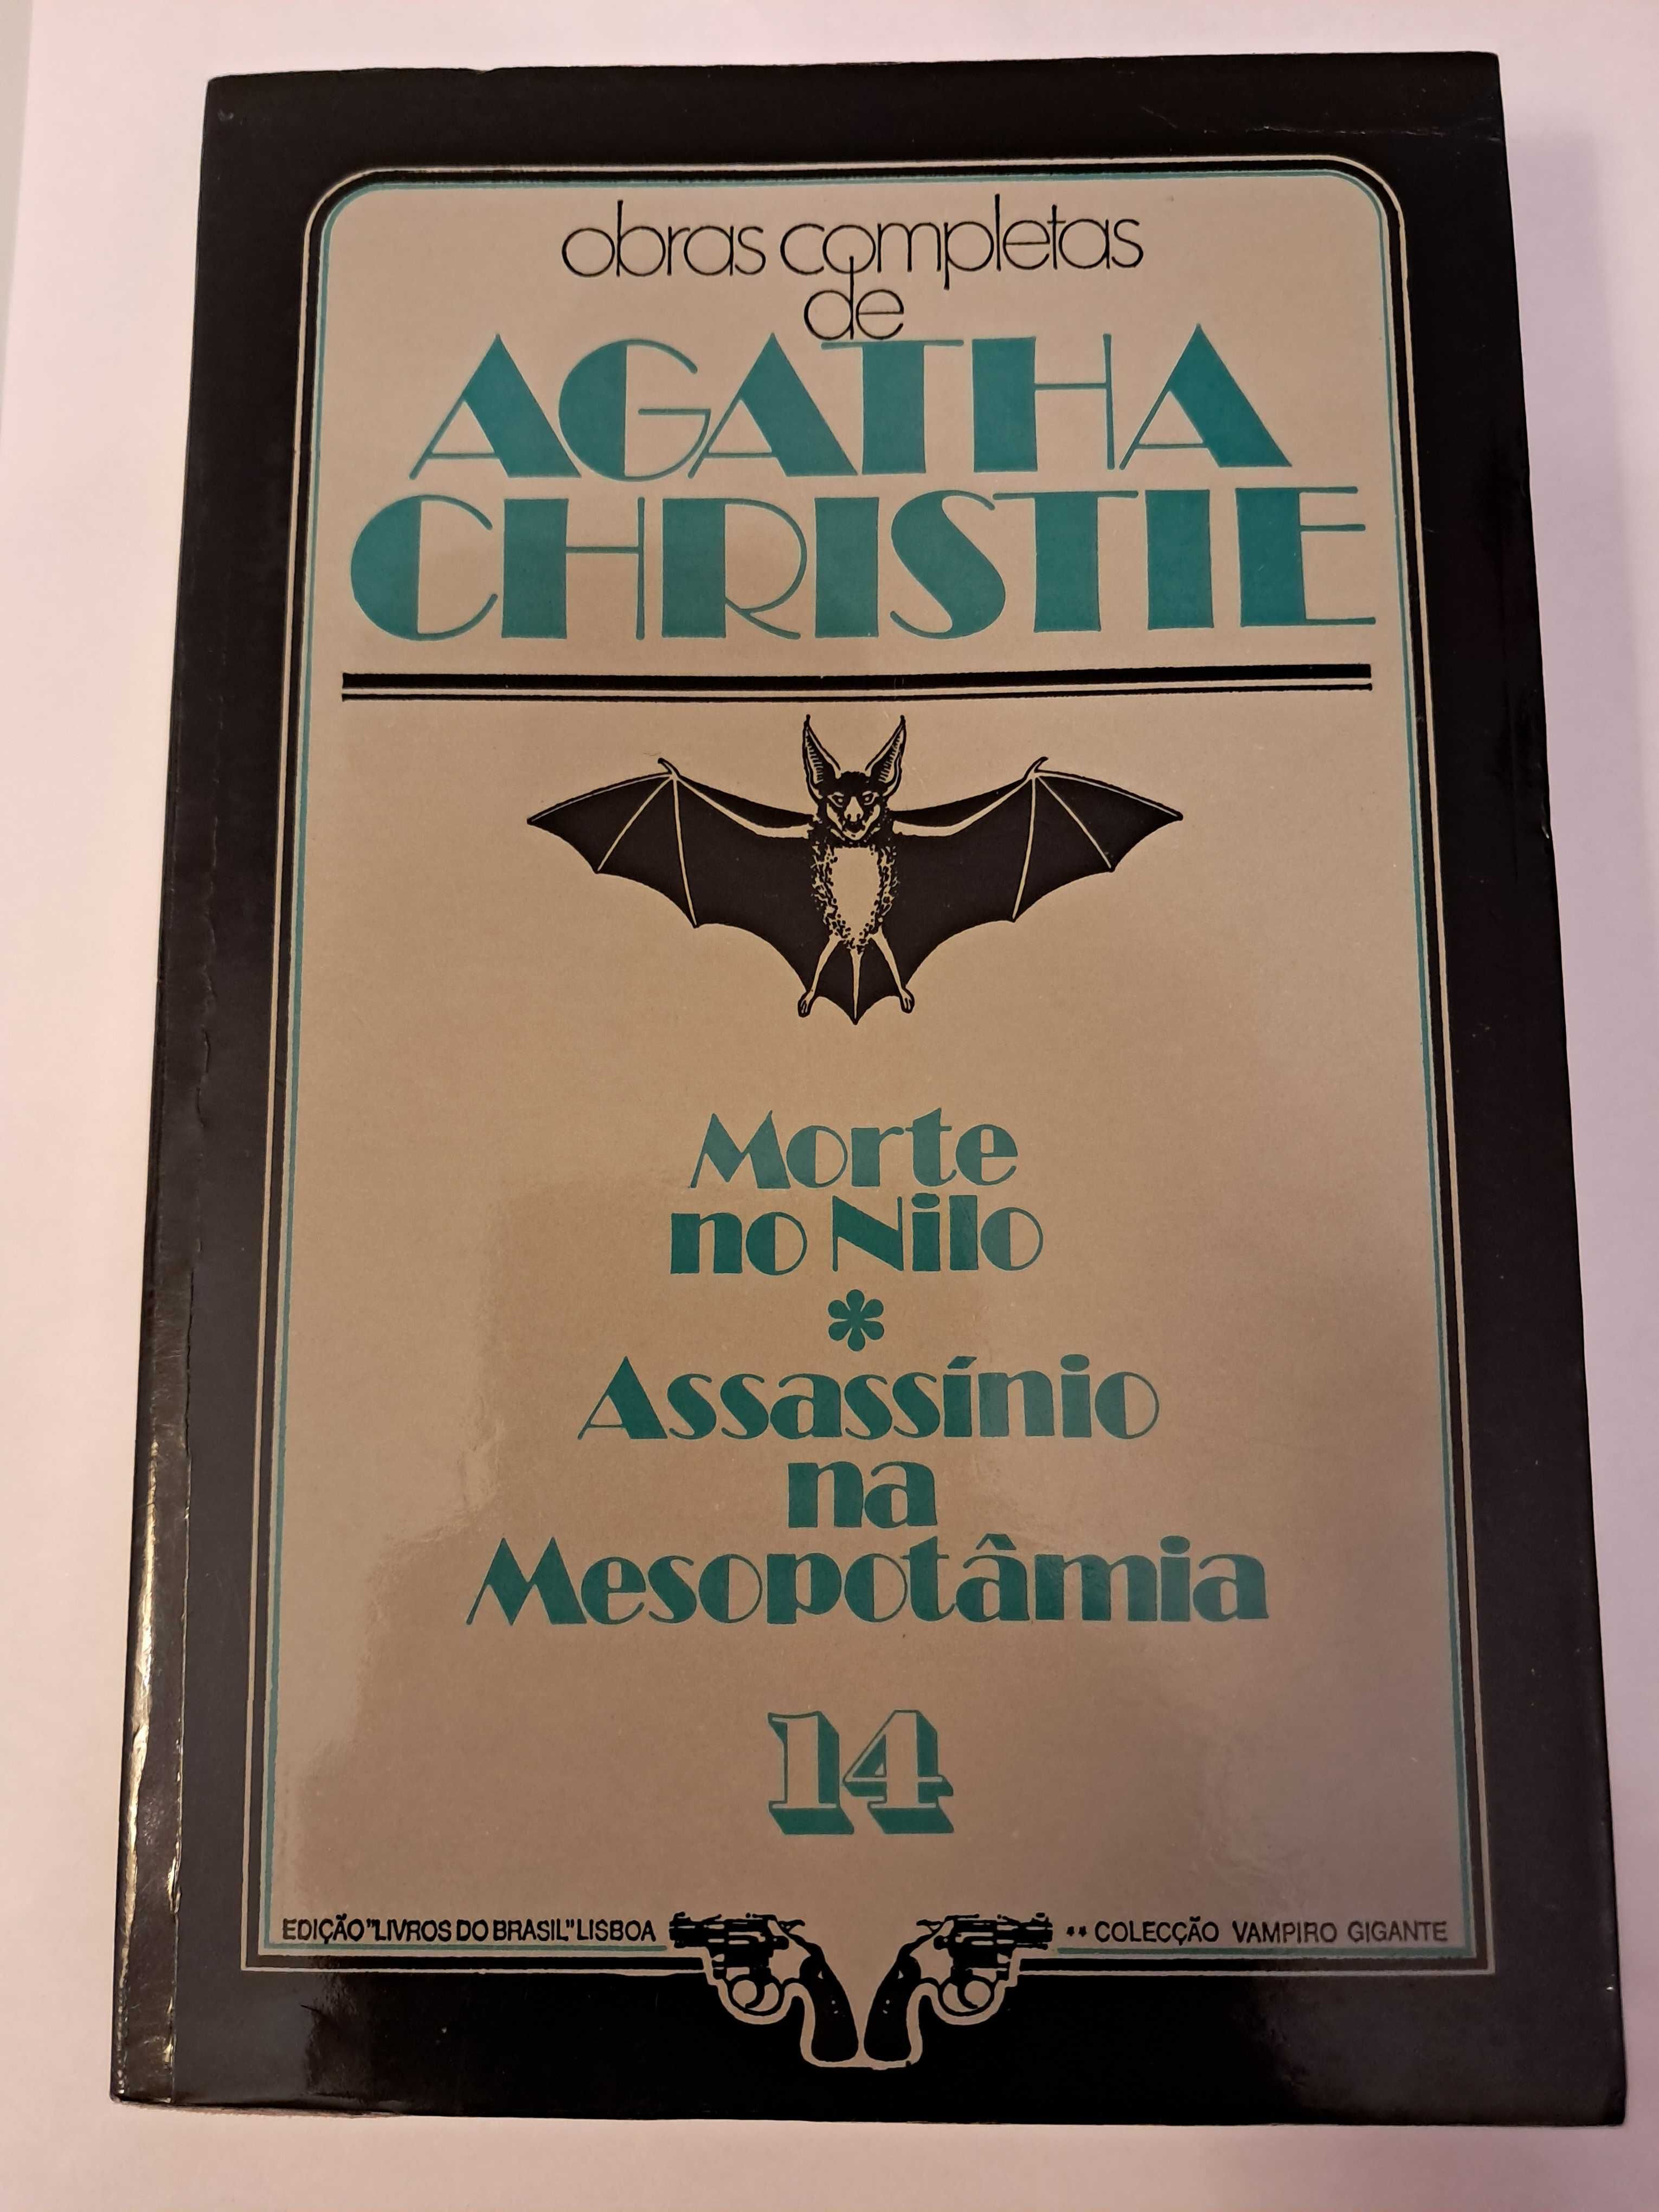 Colecção: Vampiro Gigante - Obras Completas de Agatha Christie